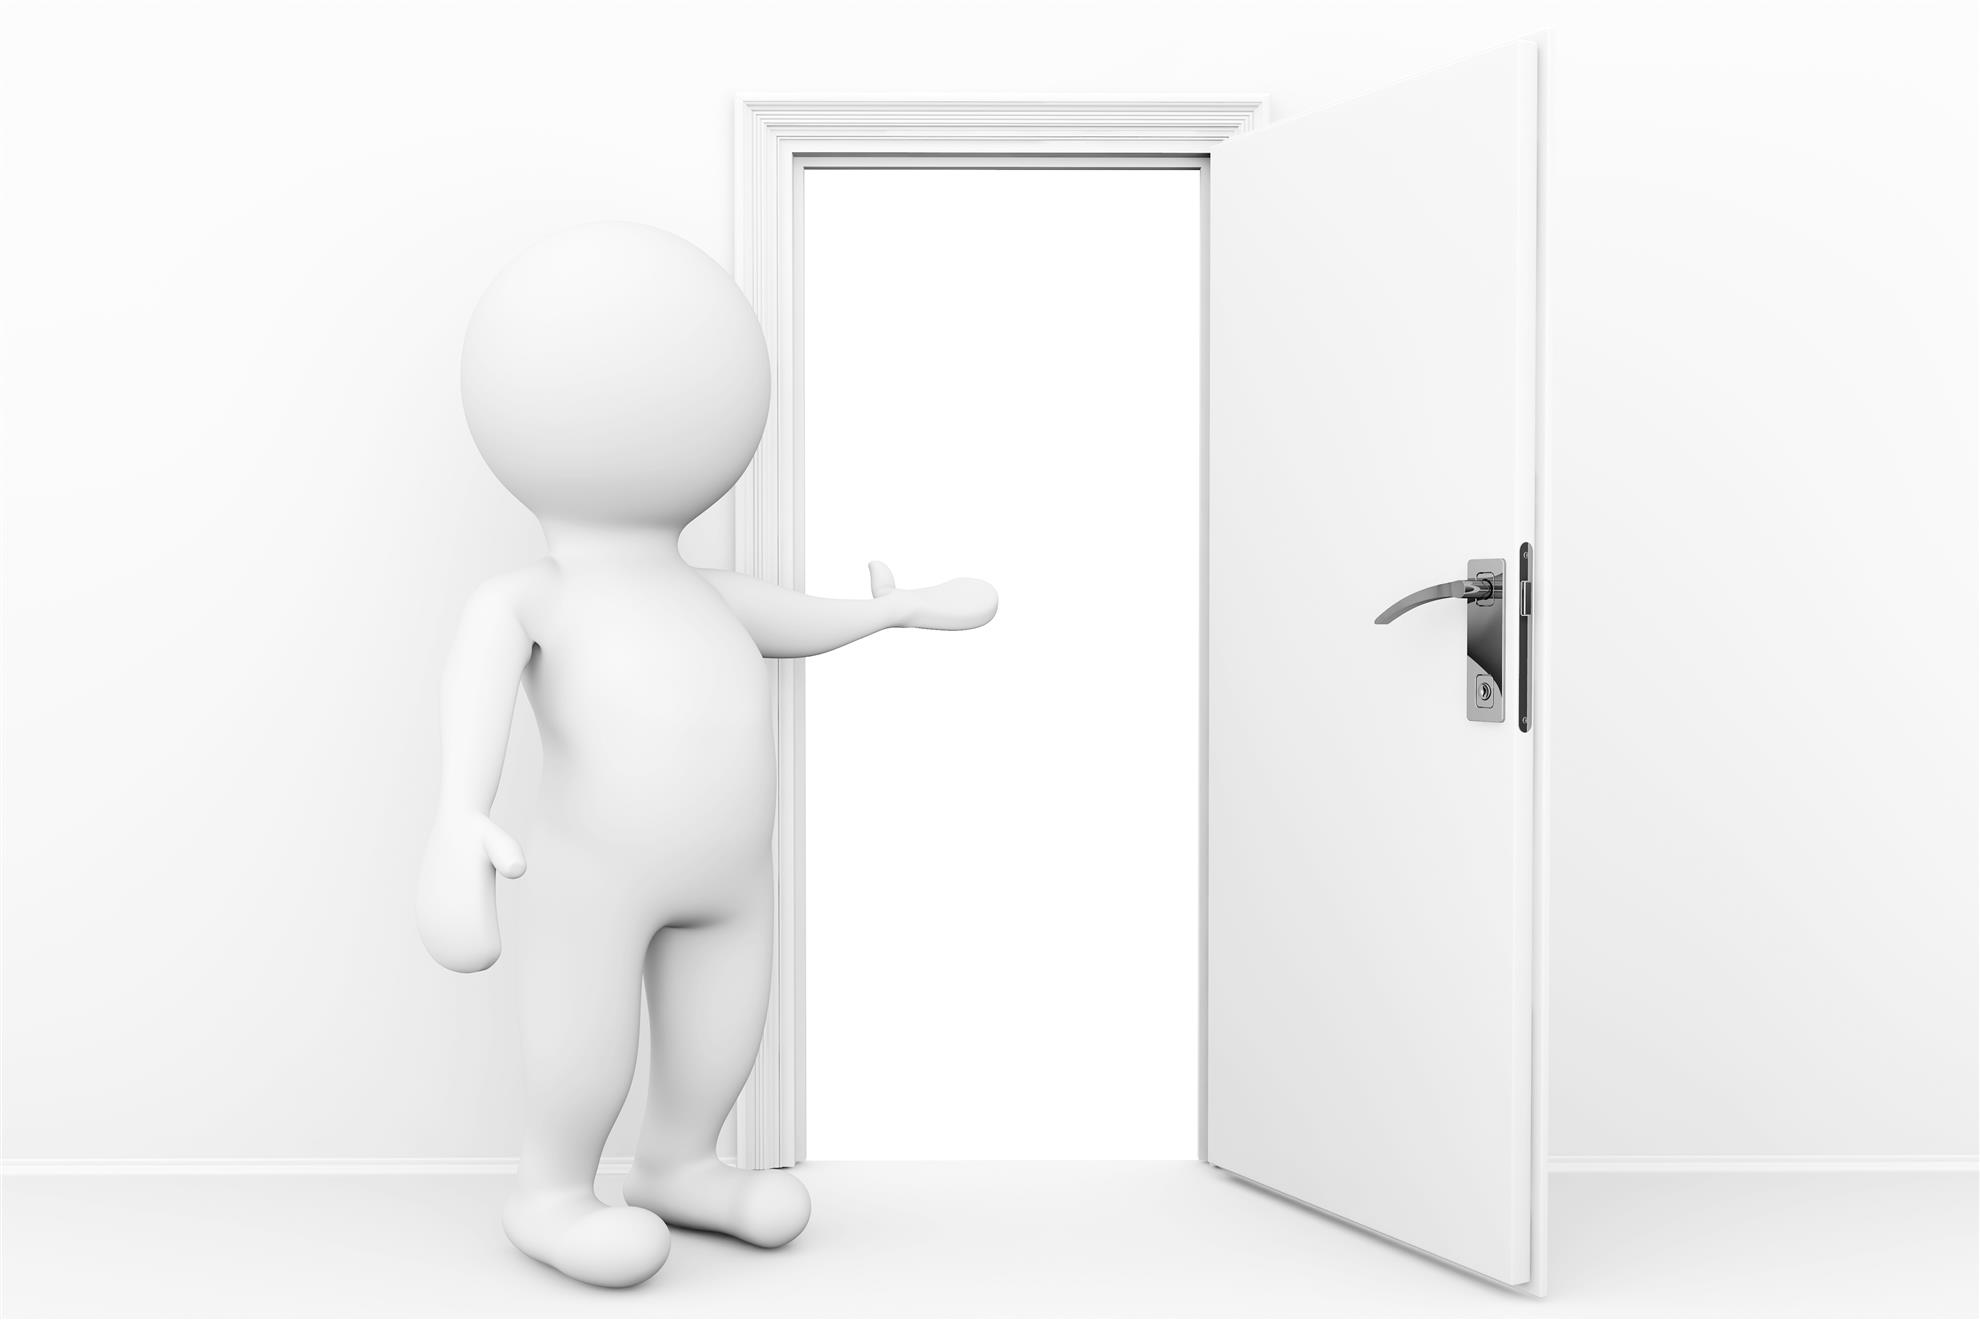 Открытая дверь задача. Открытая дверь. Человек указывает на дверь. Человек у двери. Человечек открывает дверь.